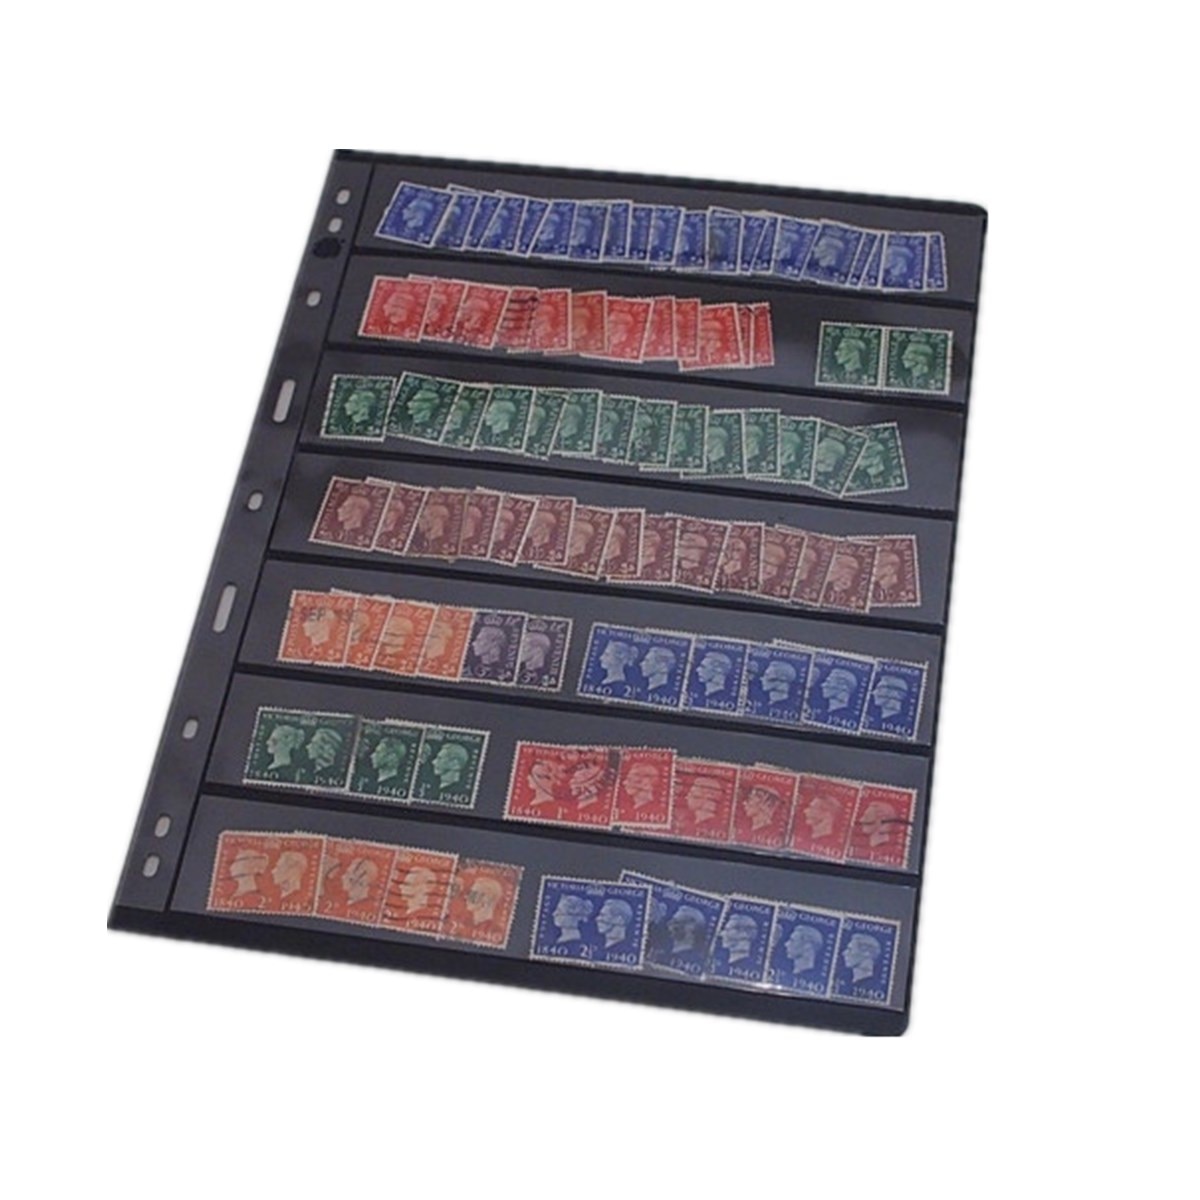 10 stk / parti frimærker gitterstempel sideindsamling frimærker indehavere af frimærkealbum pvc løvblade indersider uden omslag pccb